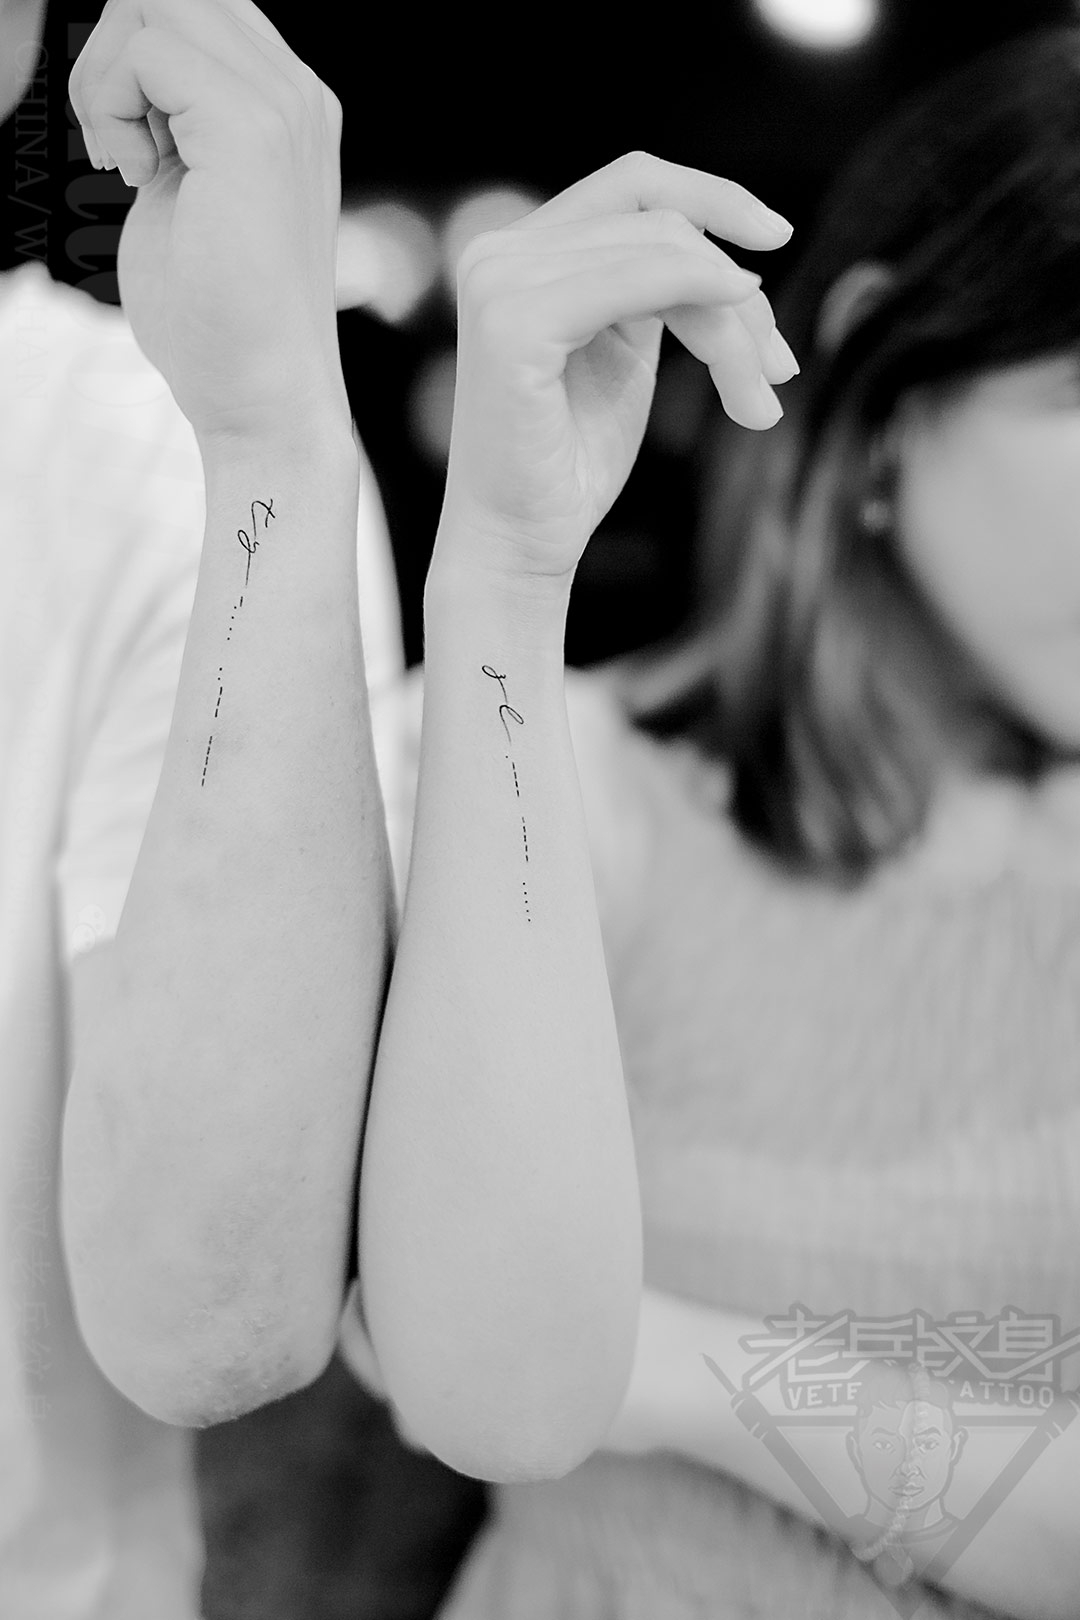 武汉老兵2020年情侣英文文字纹身作品分享